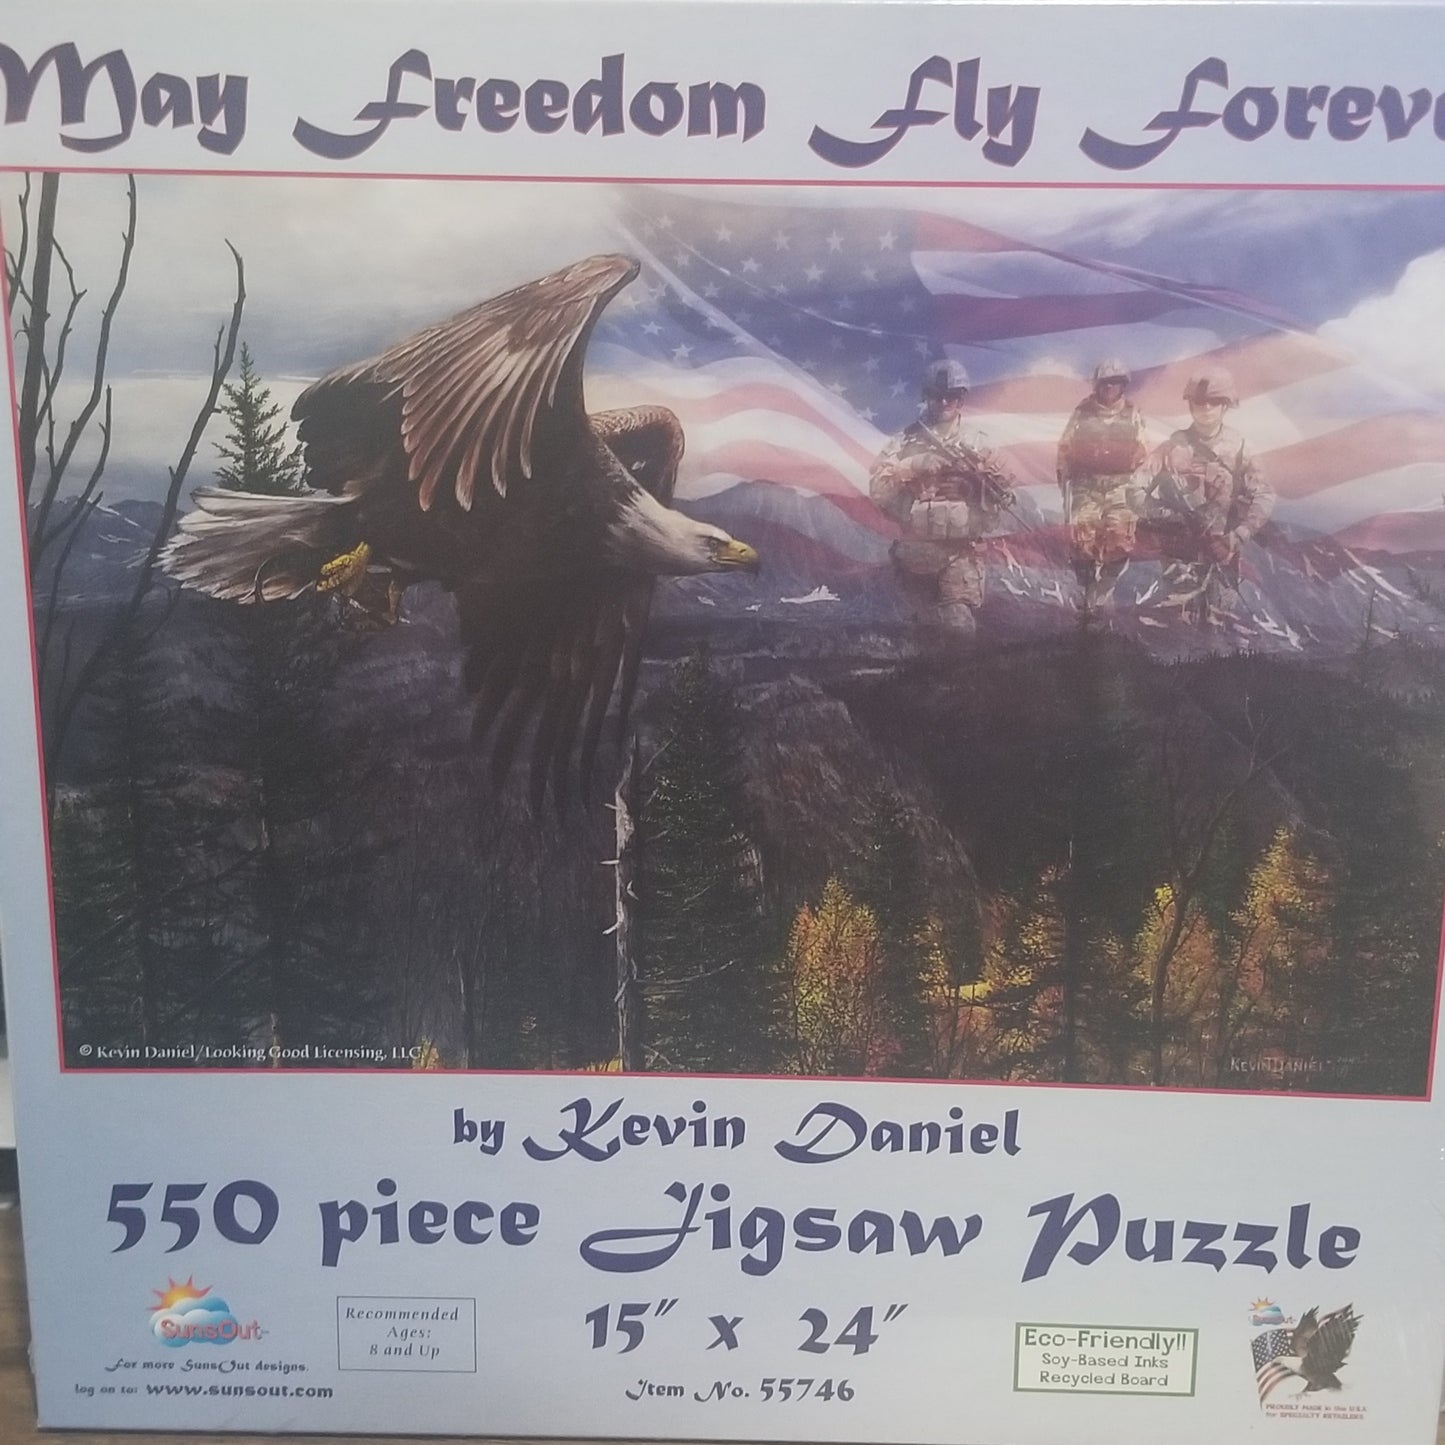 May Freedom Fly Forever af Kevin Daniel, 550 brikker